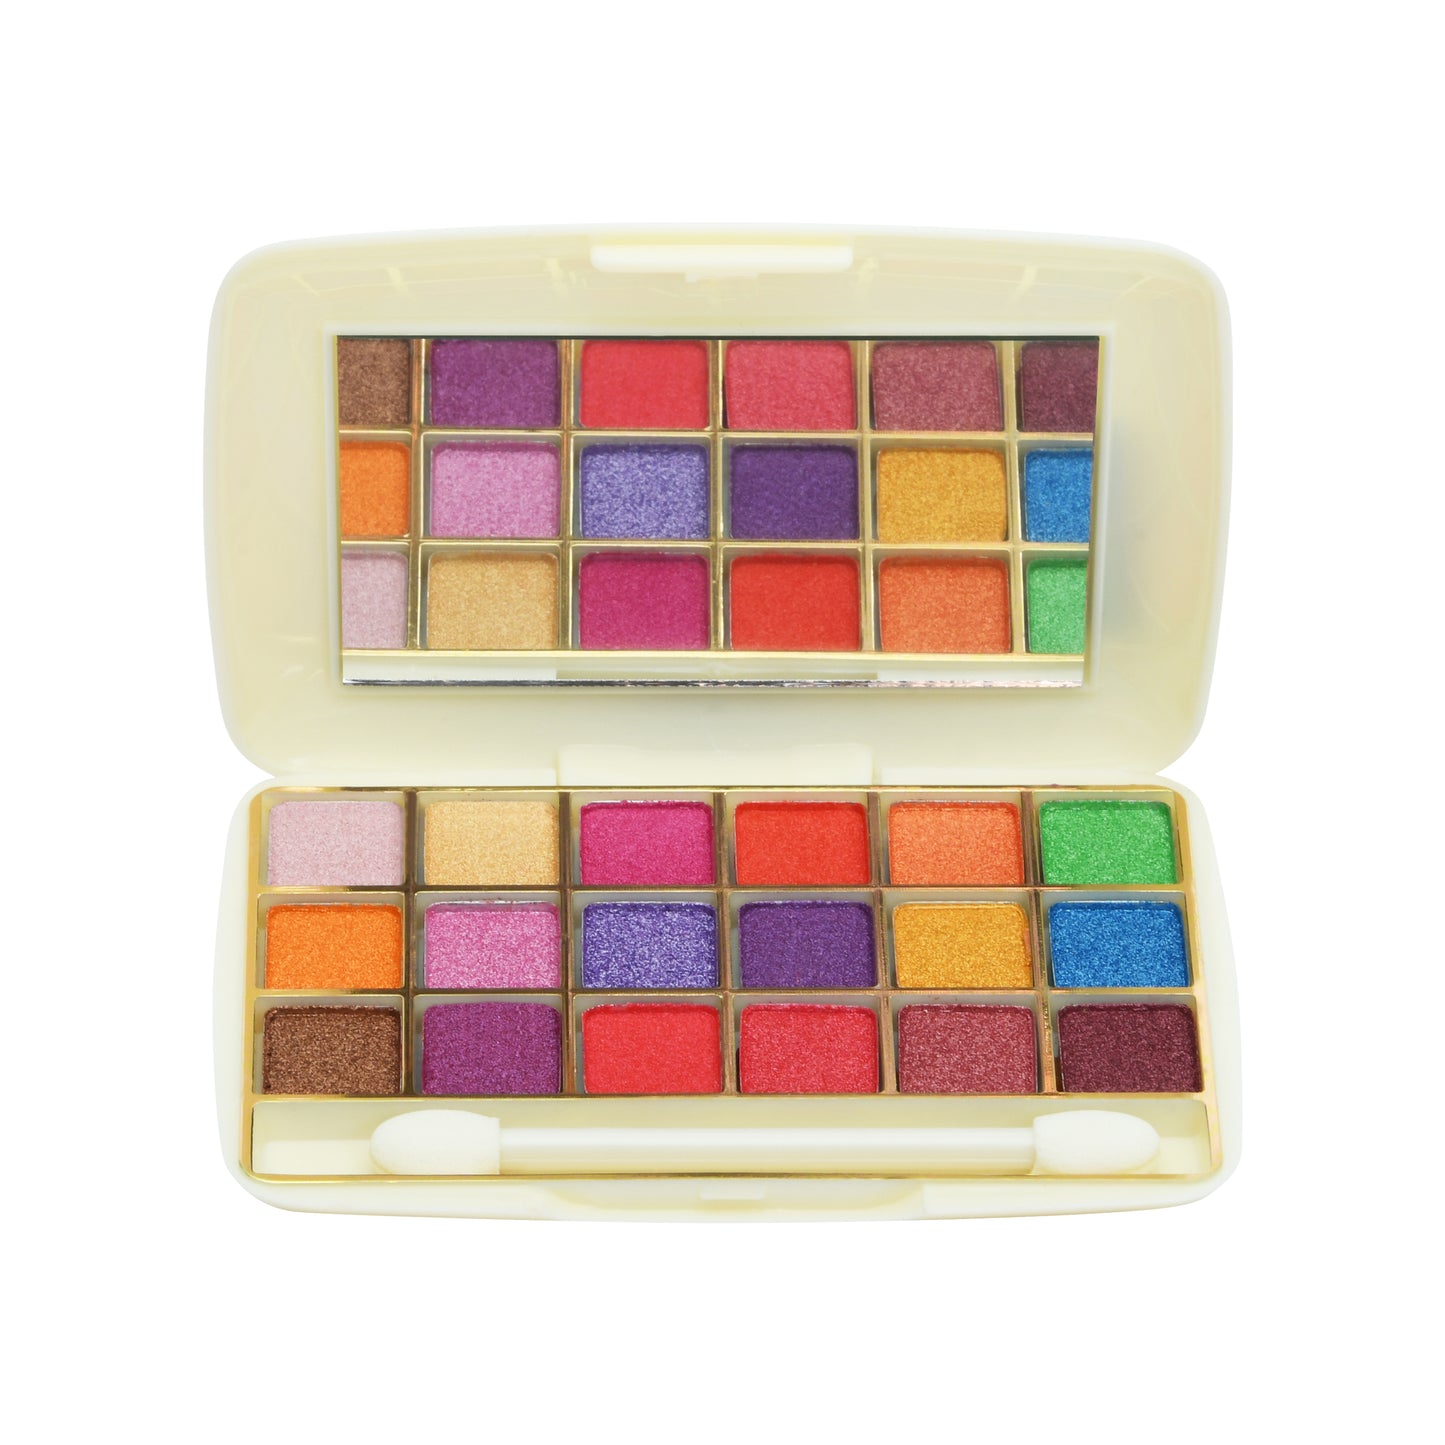 Ultimate 18 Color Matte & Shimmer Eyeshadow Palette| Long wearing Eye makeup Palette, Shimmer & Matte Finish 10g